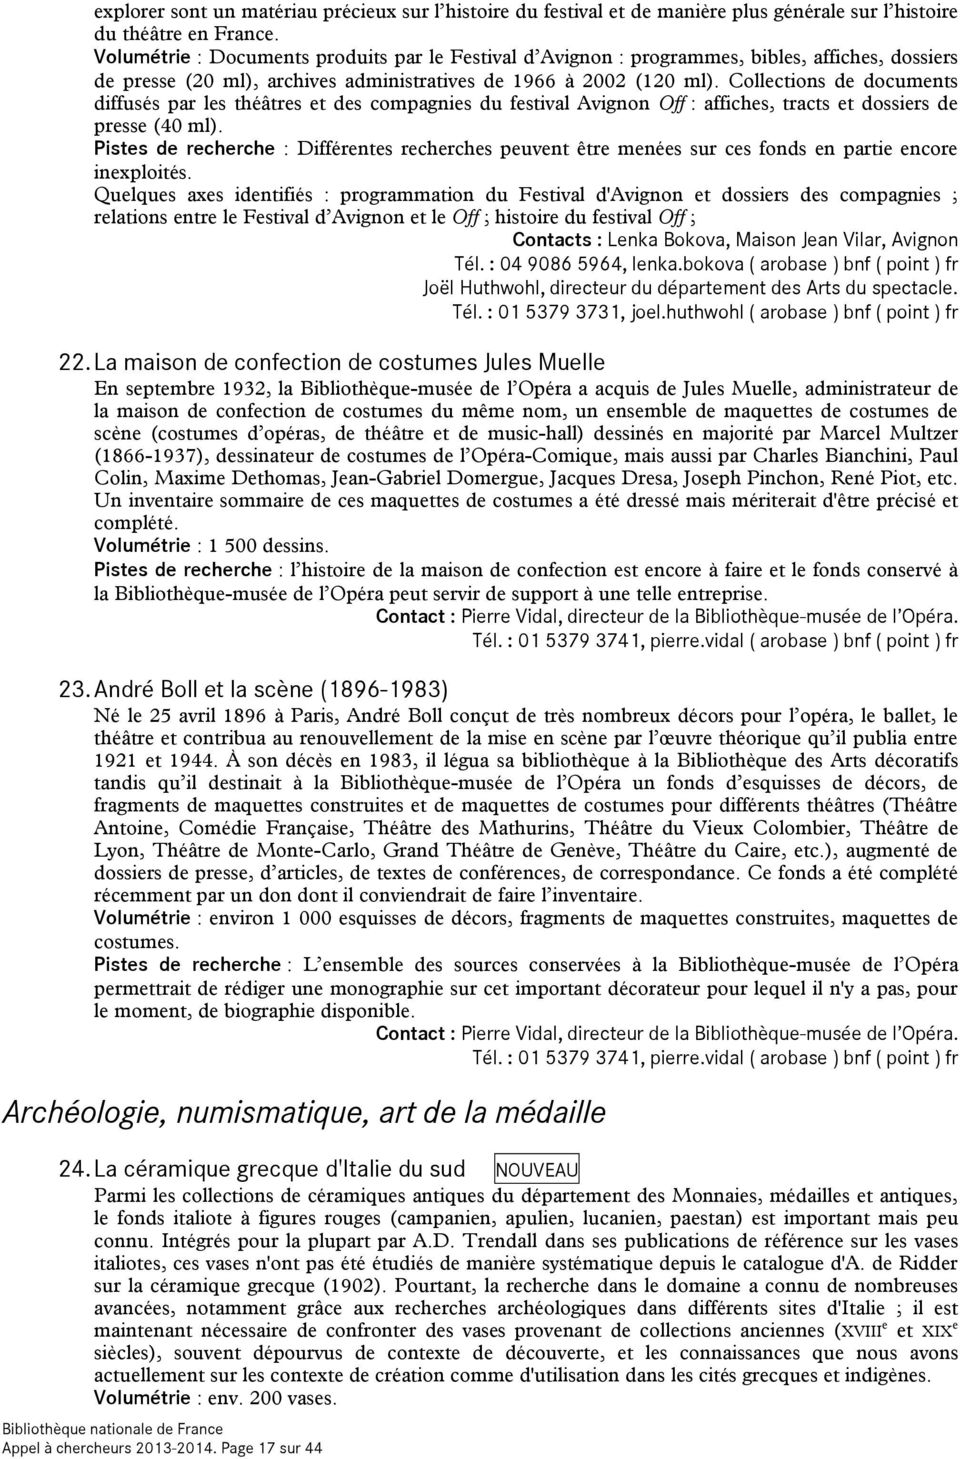 Collections de documents diffusés par les théâtres et des compagnies du festival Avignon Off : affiches, tracts et dossiers de presse (40 ml).